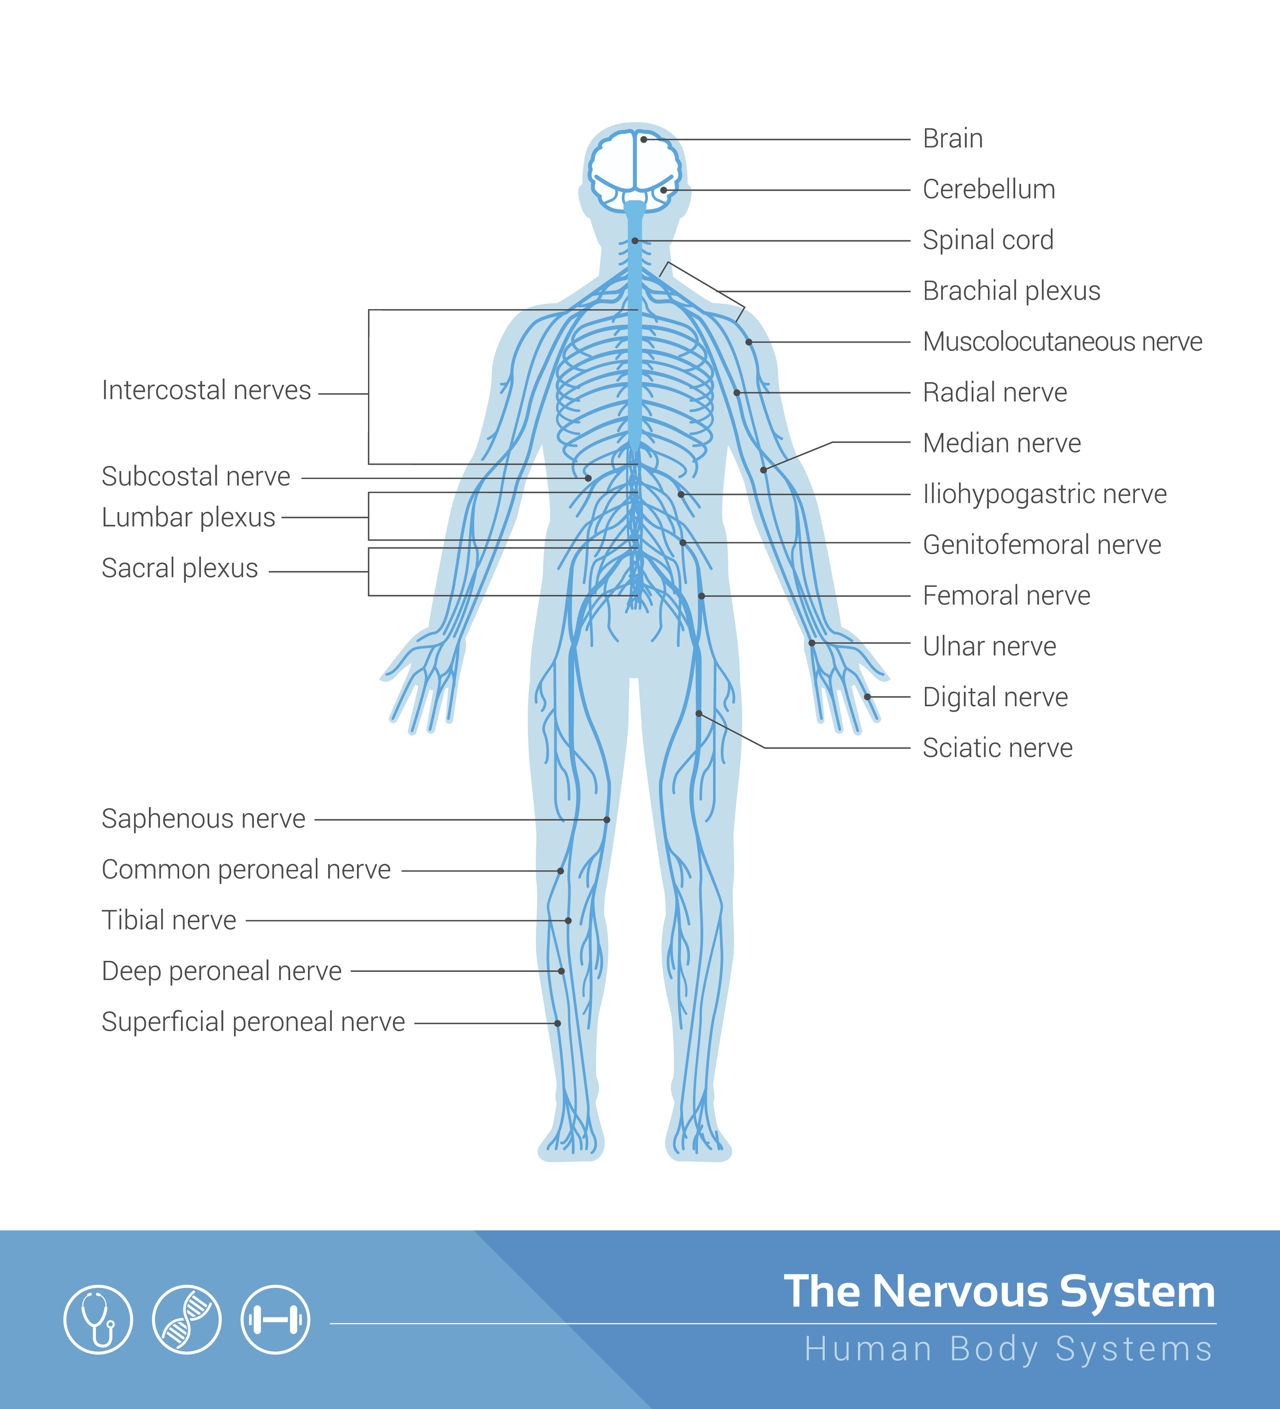 speech on nervous system